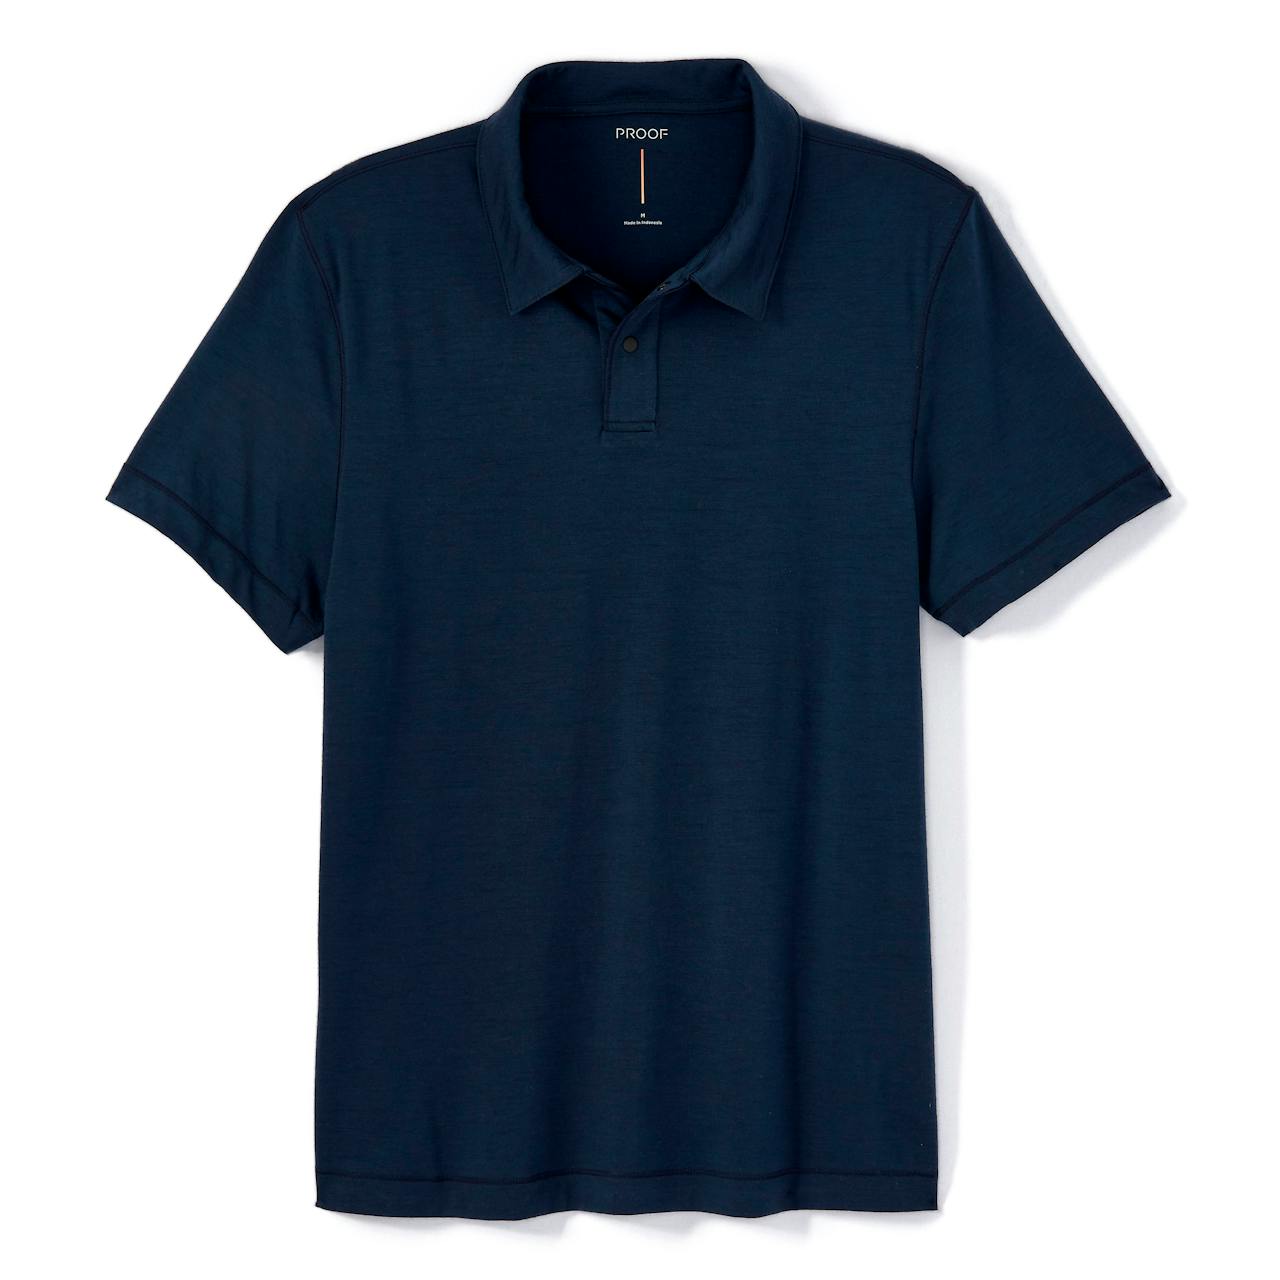 Men's Short Sleeve Polo Shirt - Light Olive M